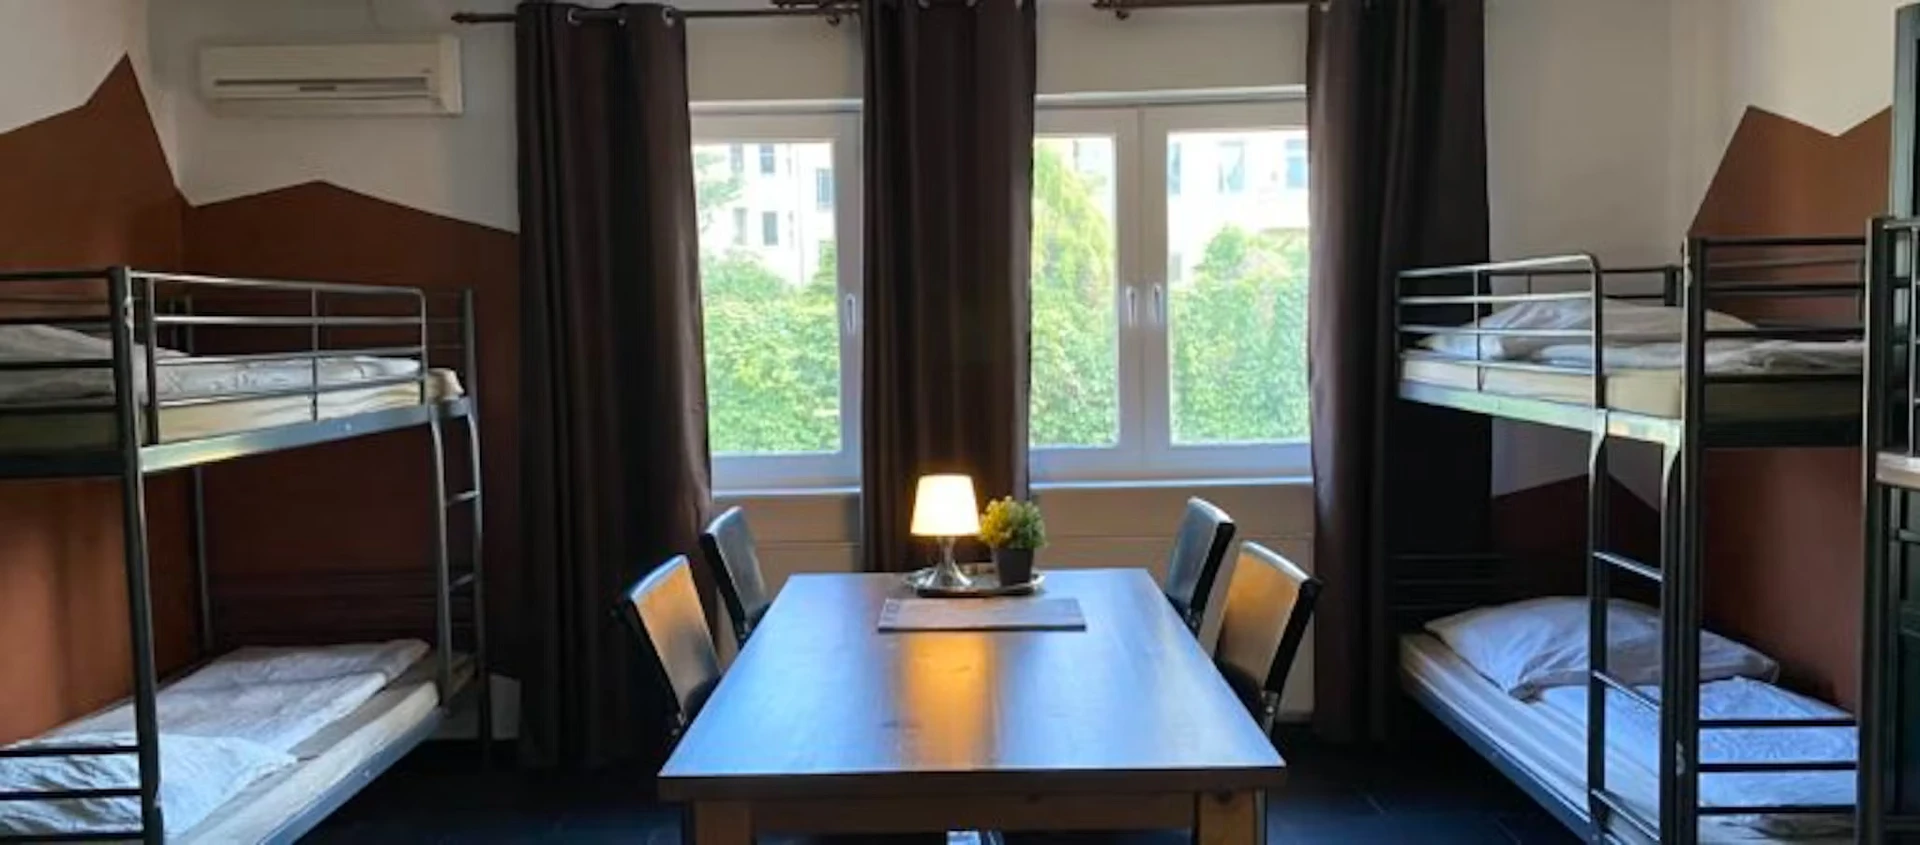 Gemeinsames Zimmer mit einem anderen Studierenden in Berlin